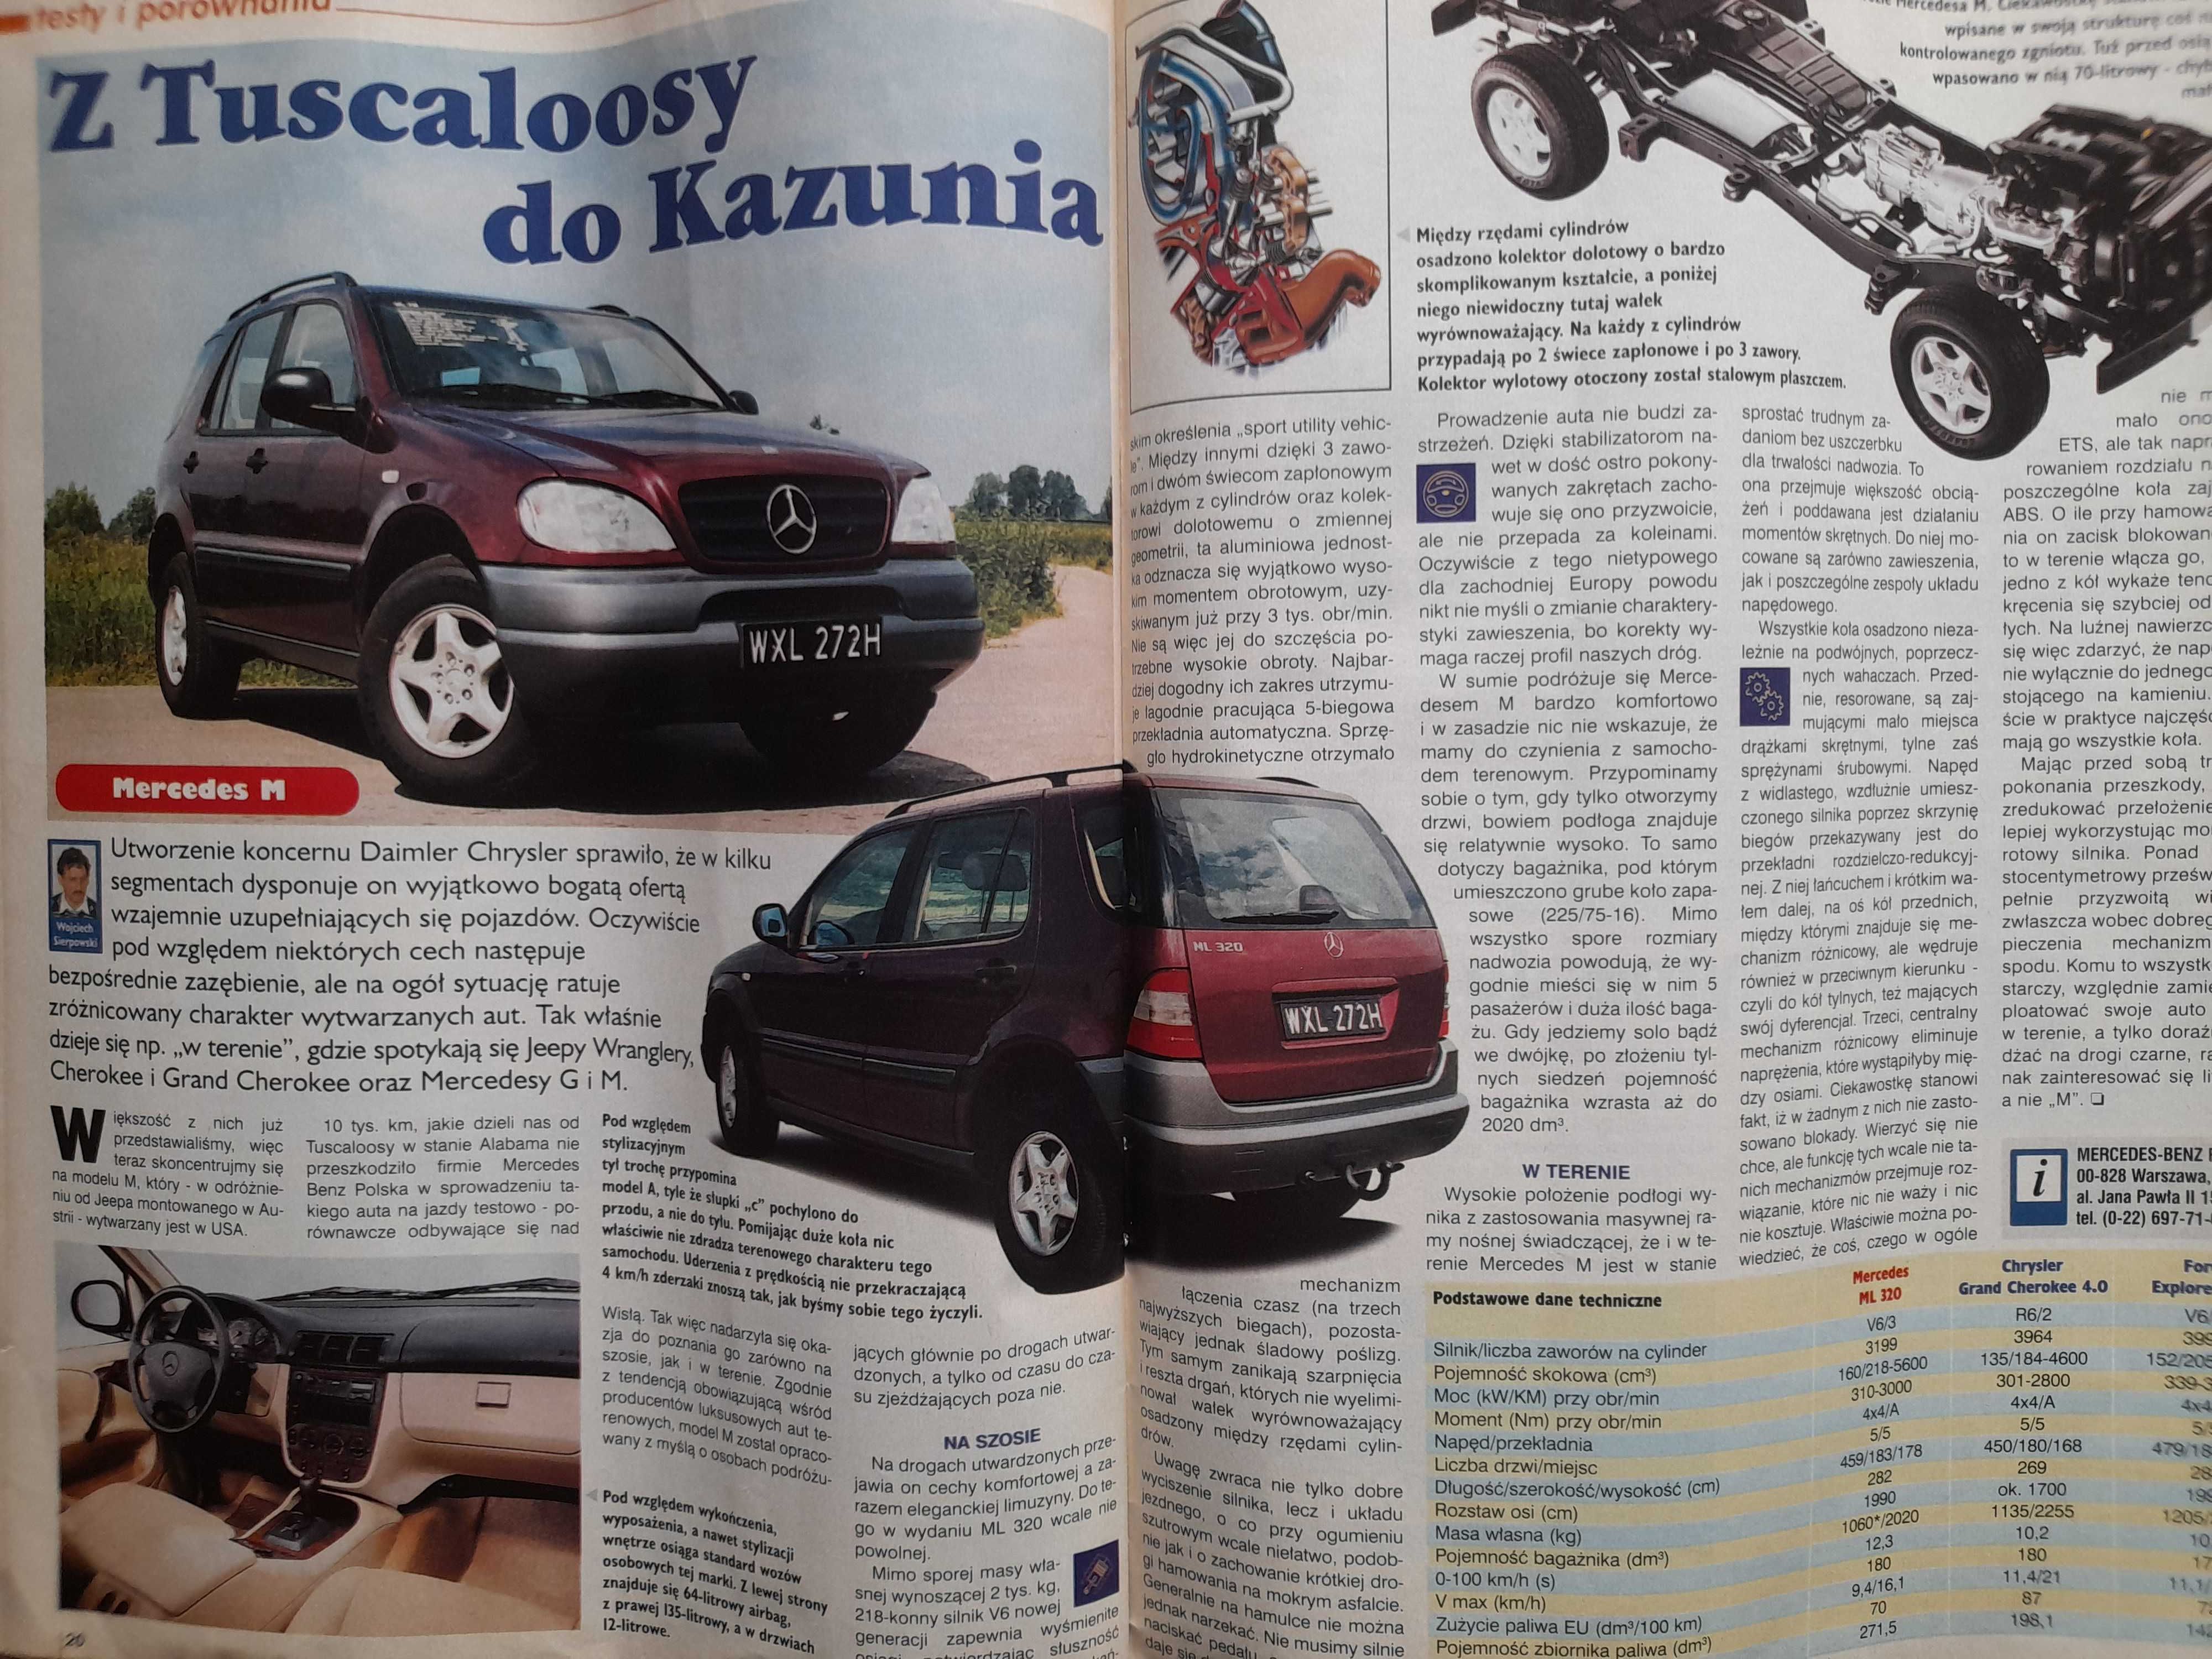 MOTOR Siena, Swift, Clio, Berlingo, Audi A4, Mazda MX-5 rok 1999